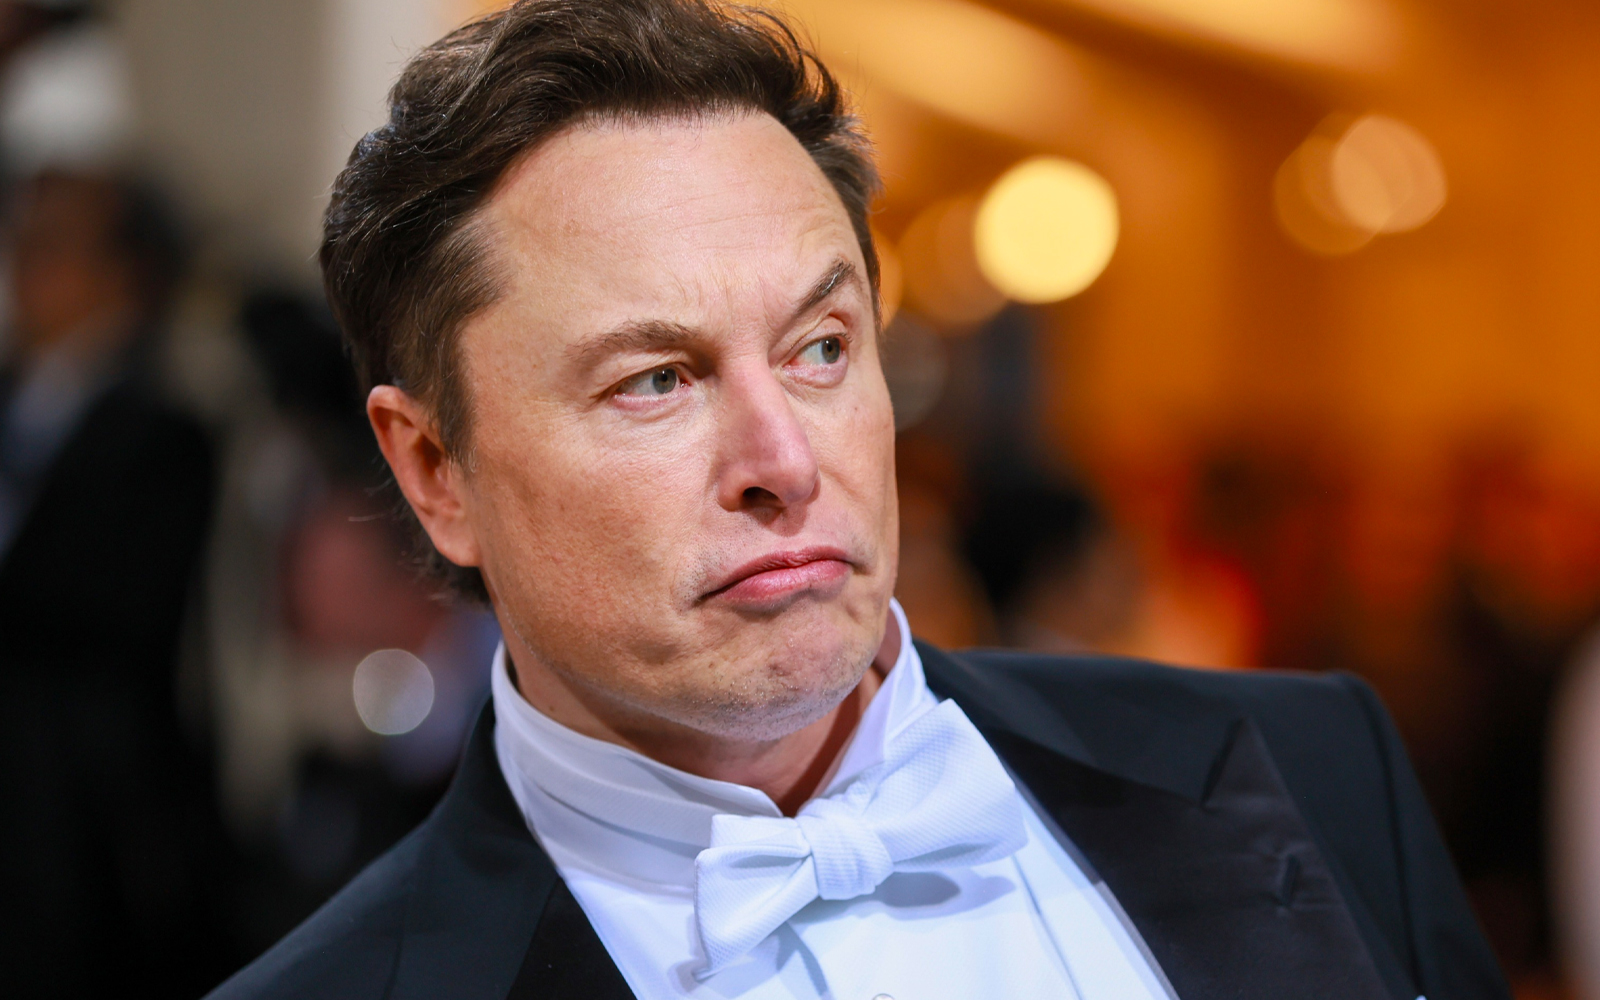 “ถ้าจะไปดาวอังคาร ต้องทำงานแบบไร้ความรู้สึก” บุคลิกของ Elon Musk ที่ทำให้เขาประสบความสำเร็จ